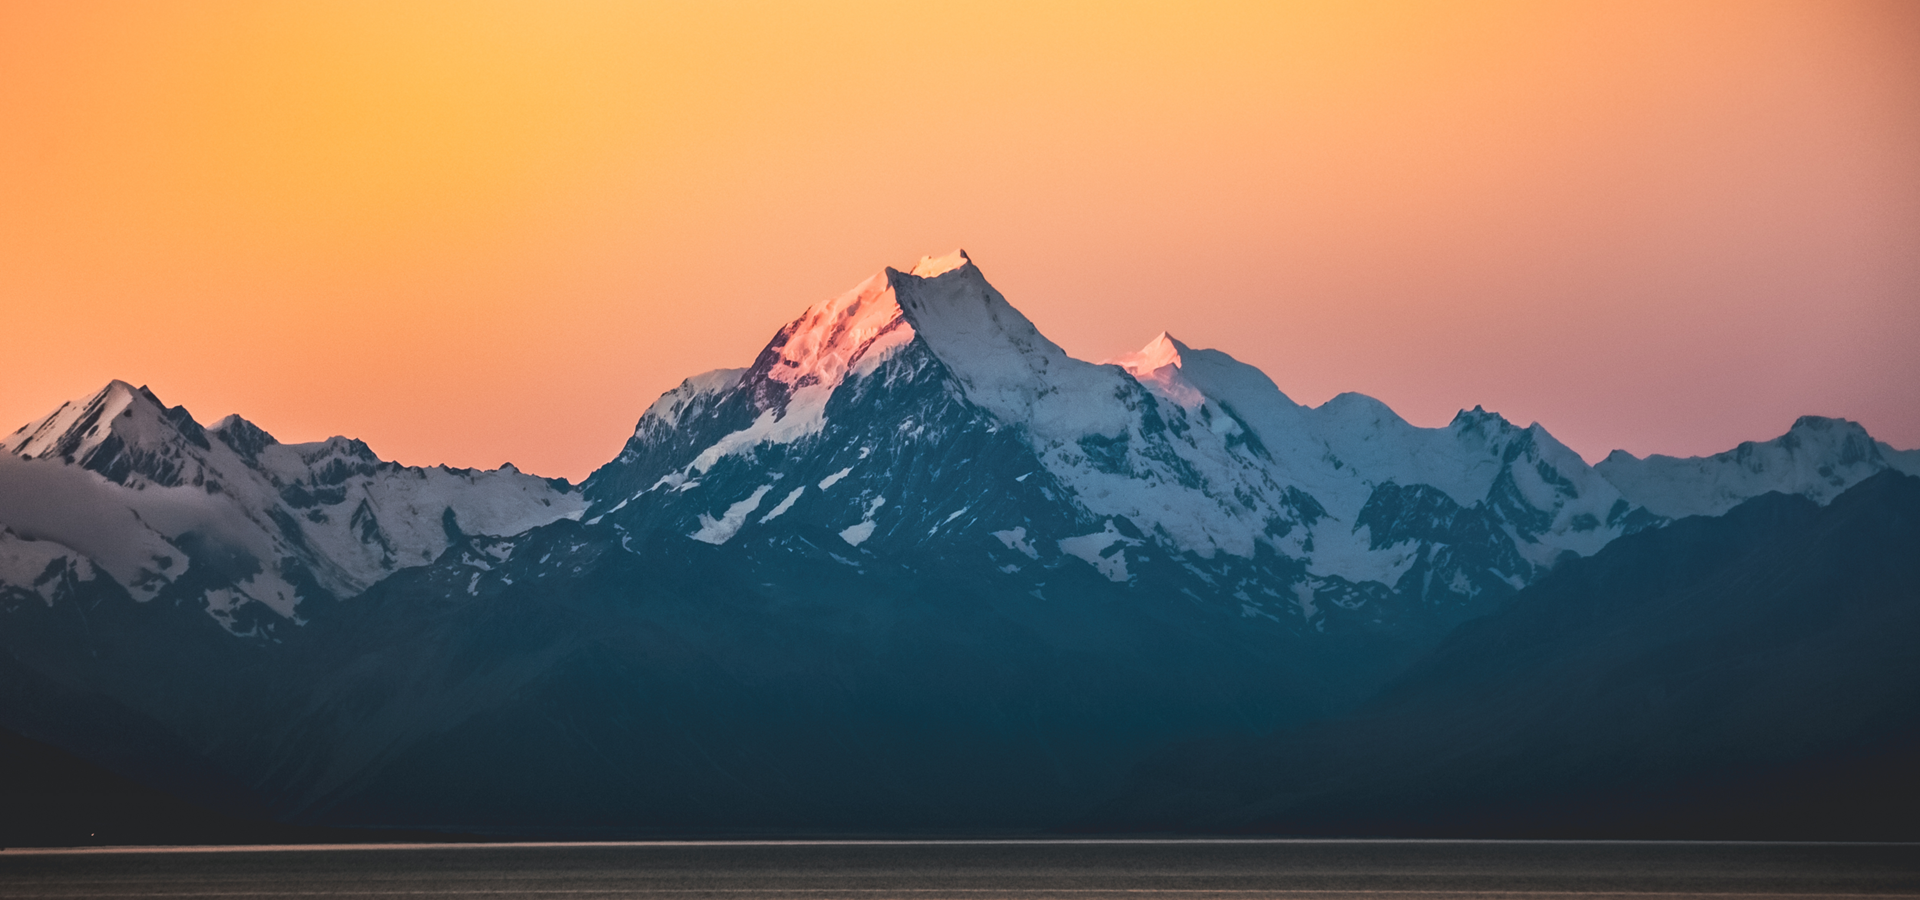 Mountain summit in sunset